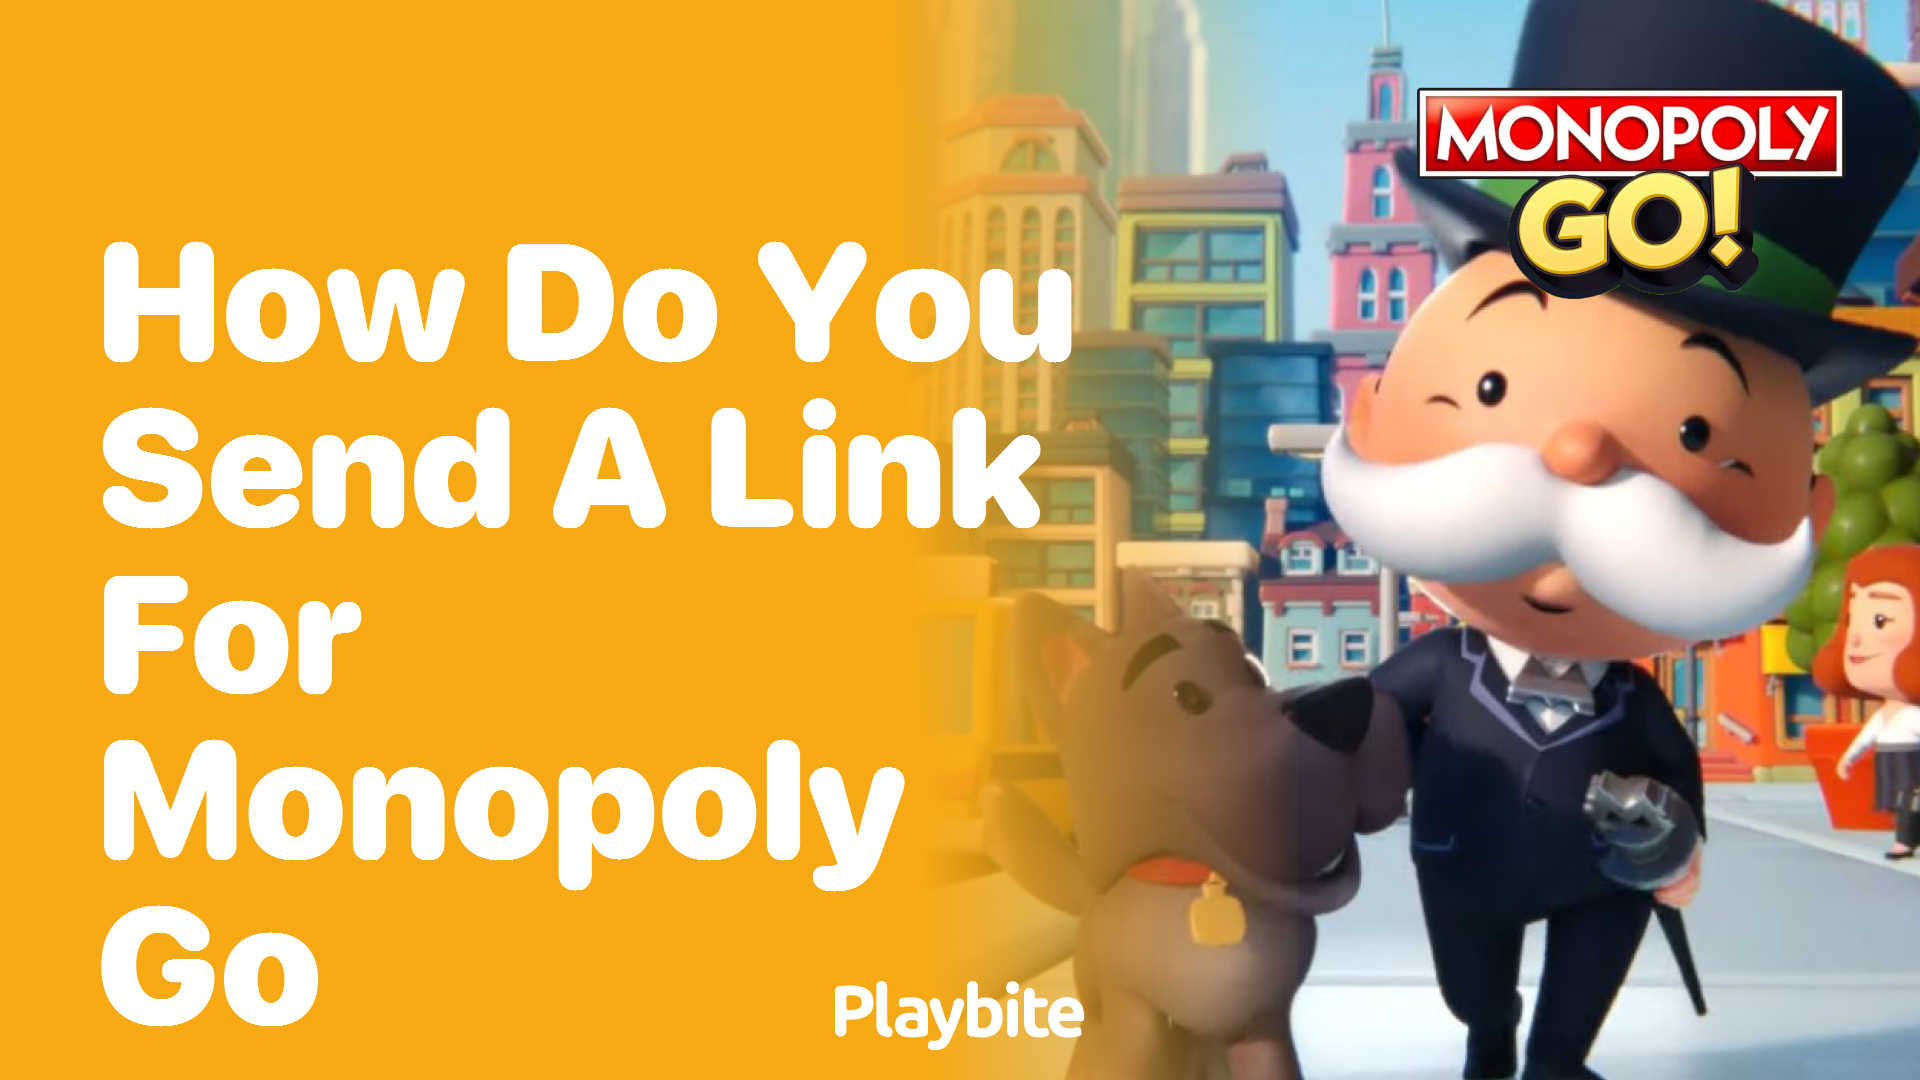 How Do You Send a Link for Monopoly Go?